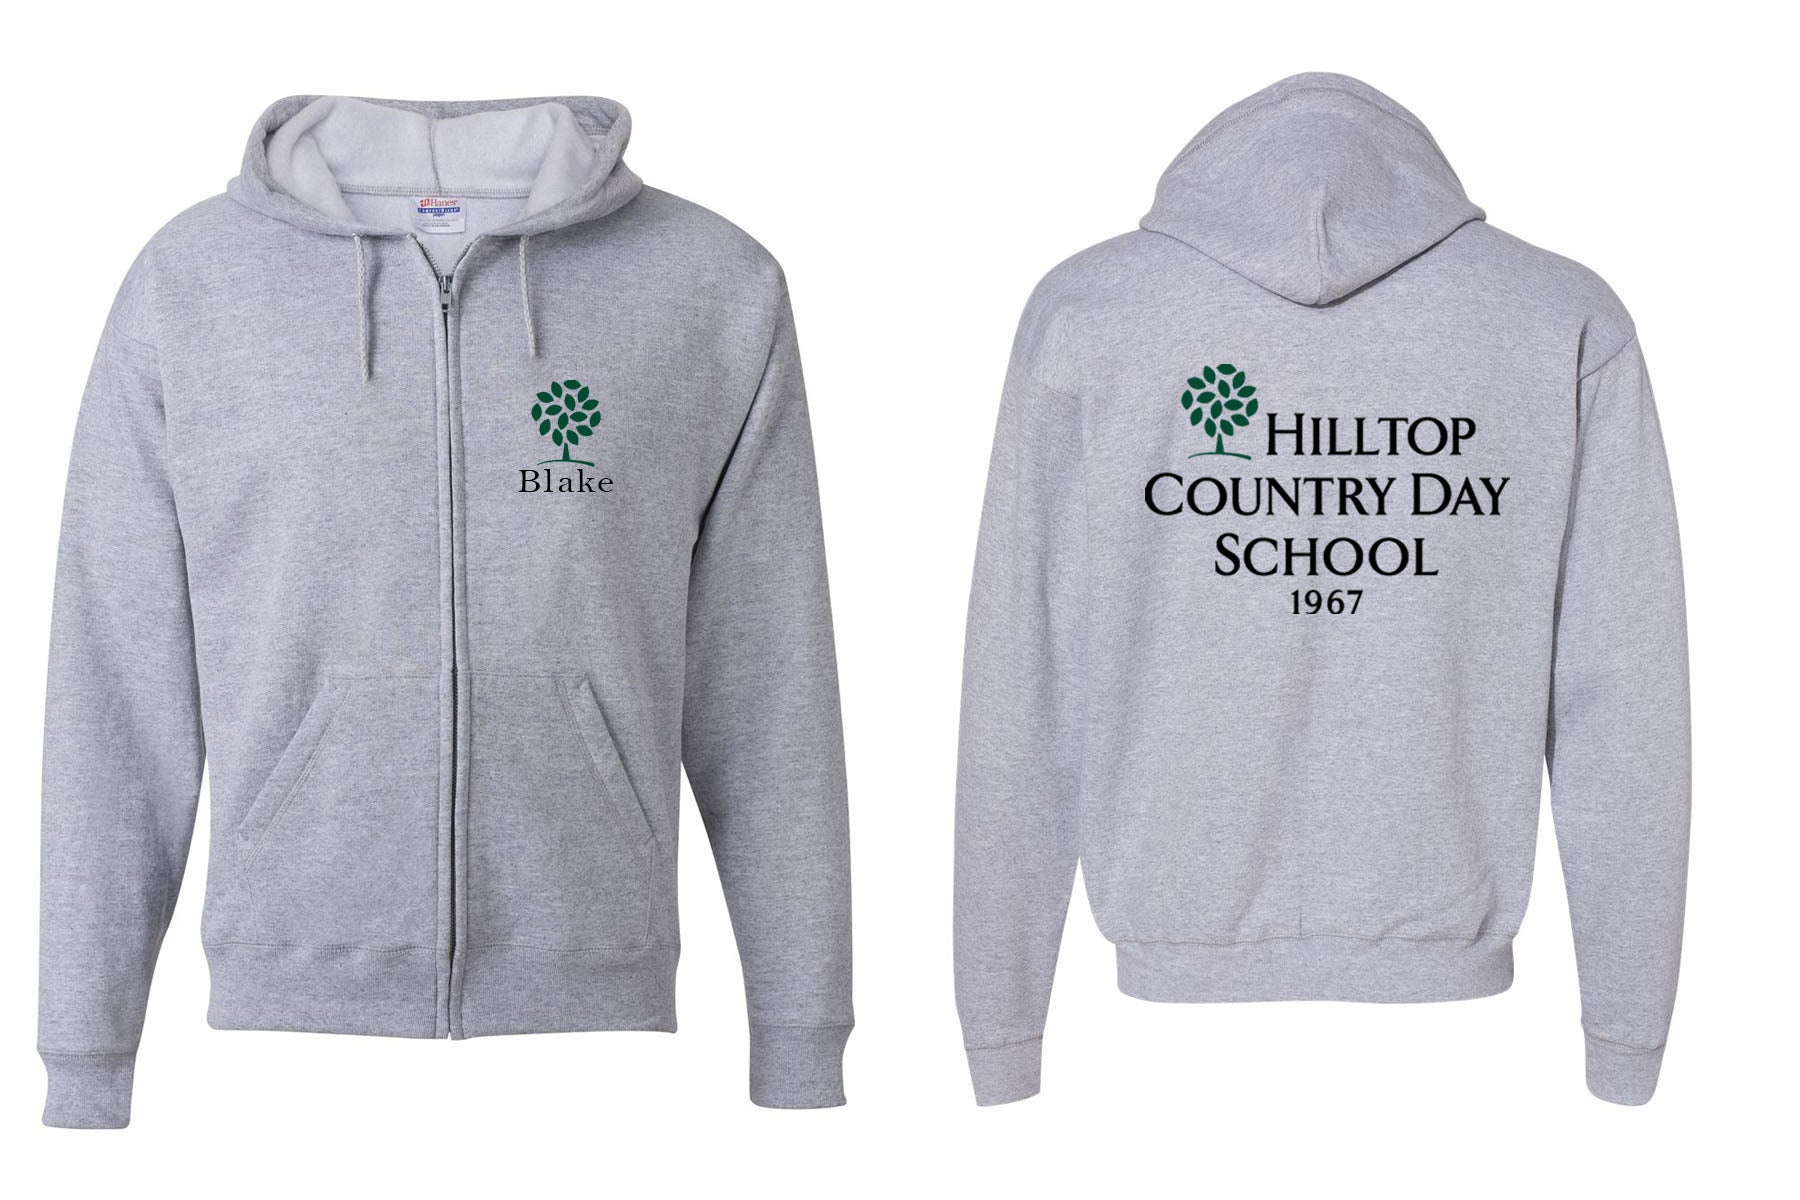 Hilltop Country Day School design 2 Zip up Sweatshirt